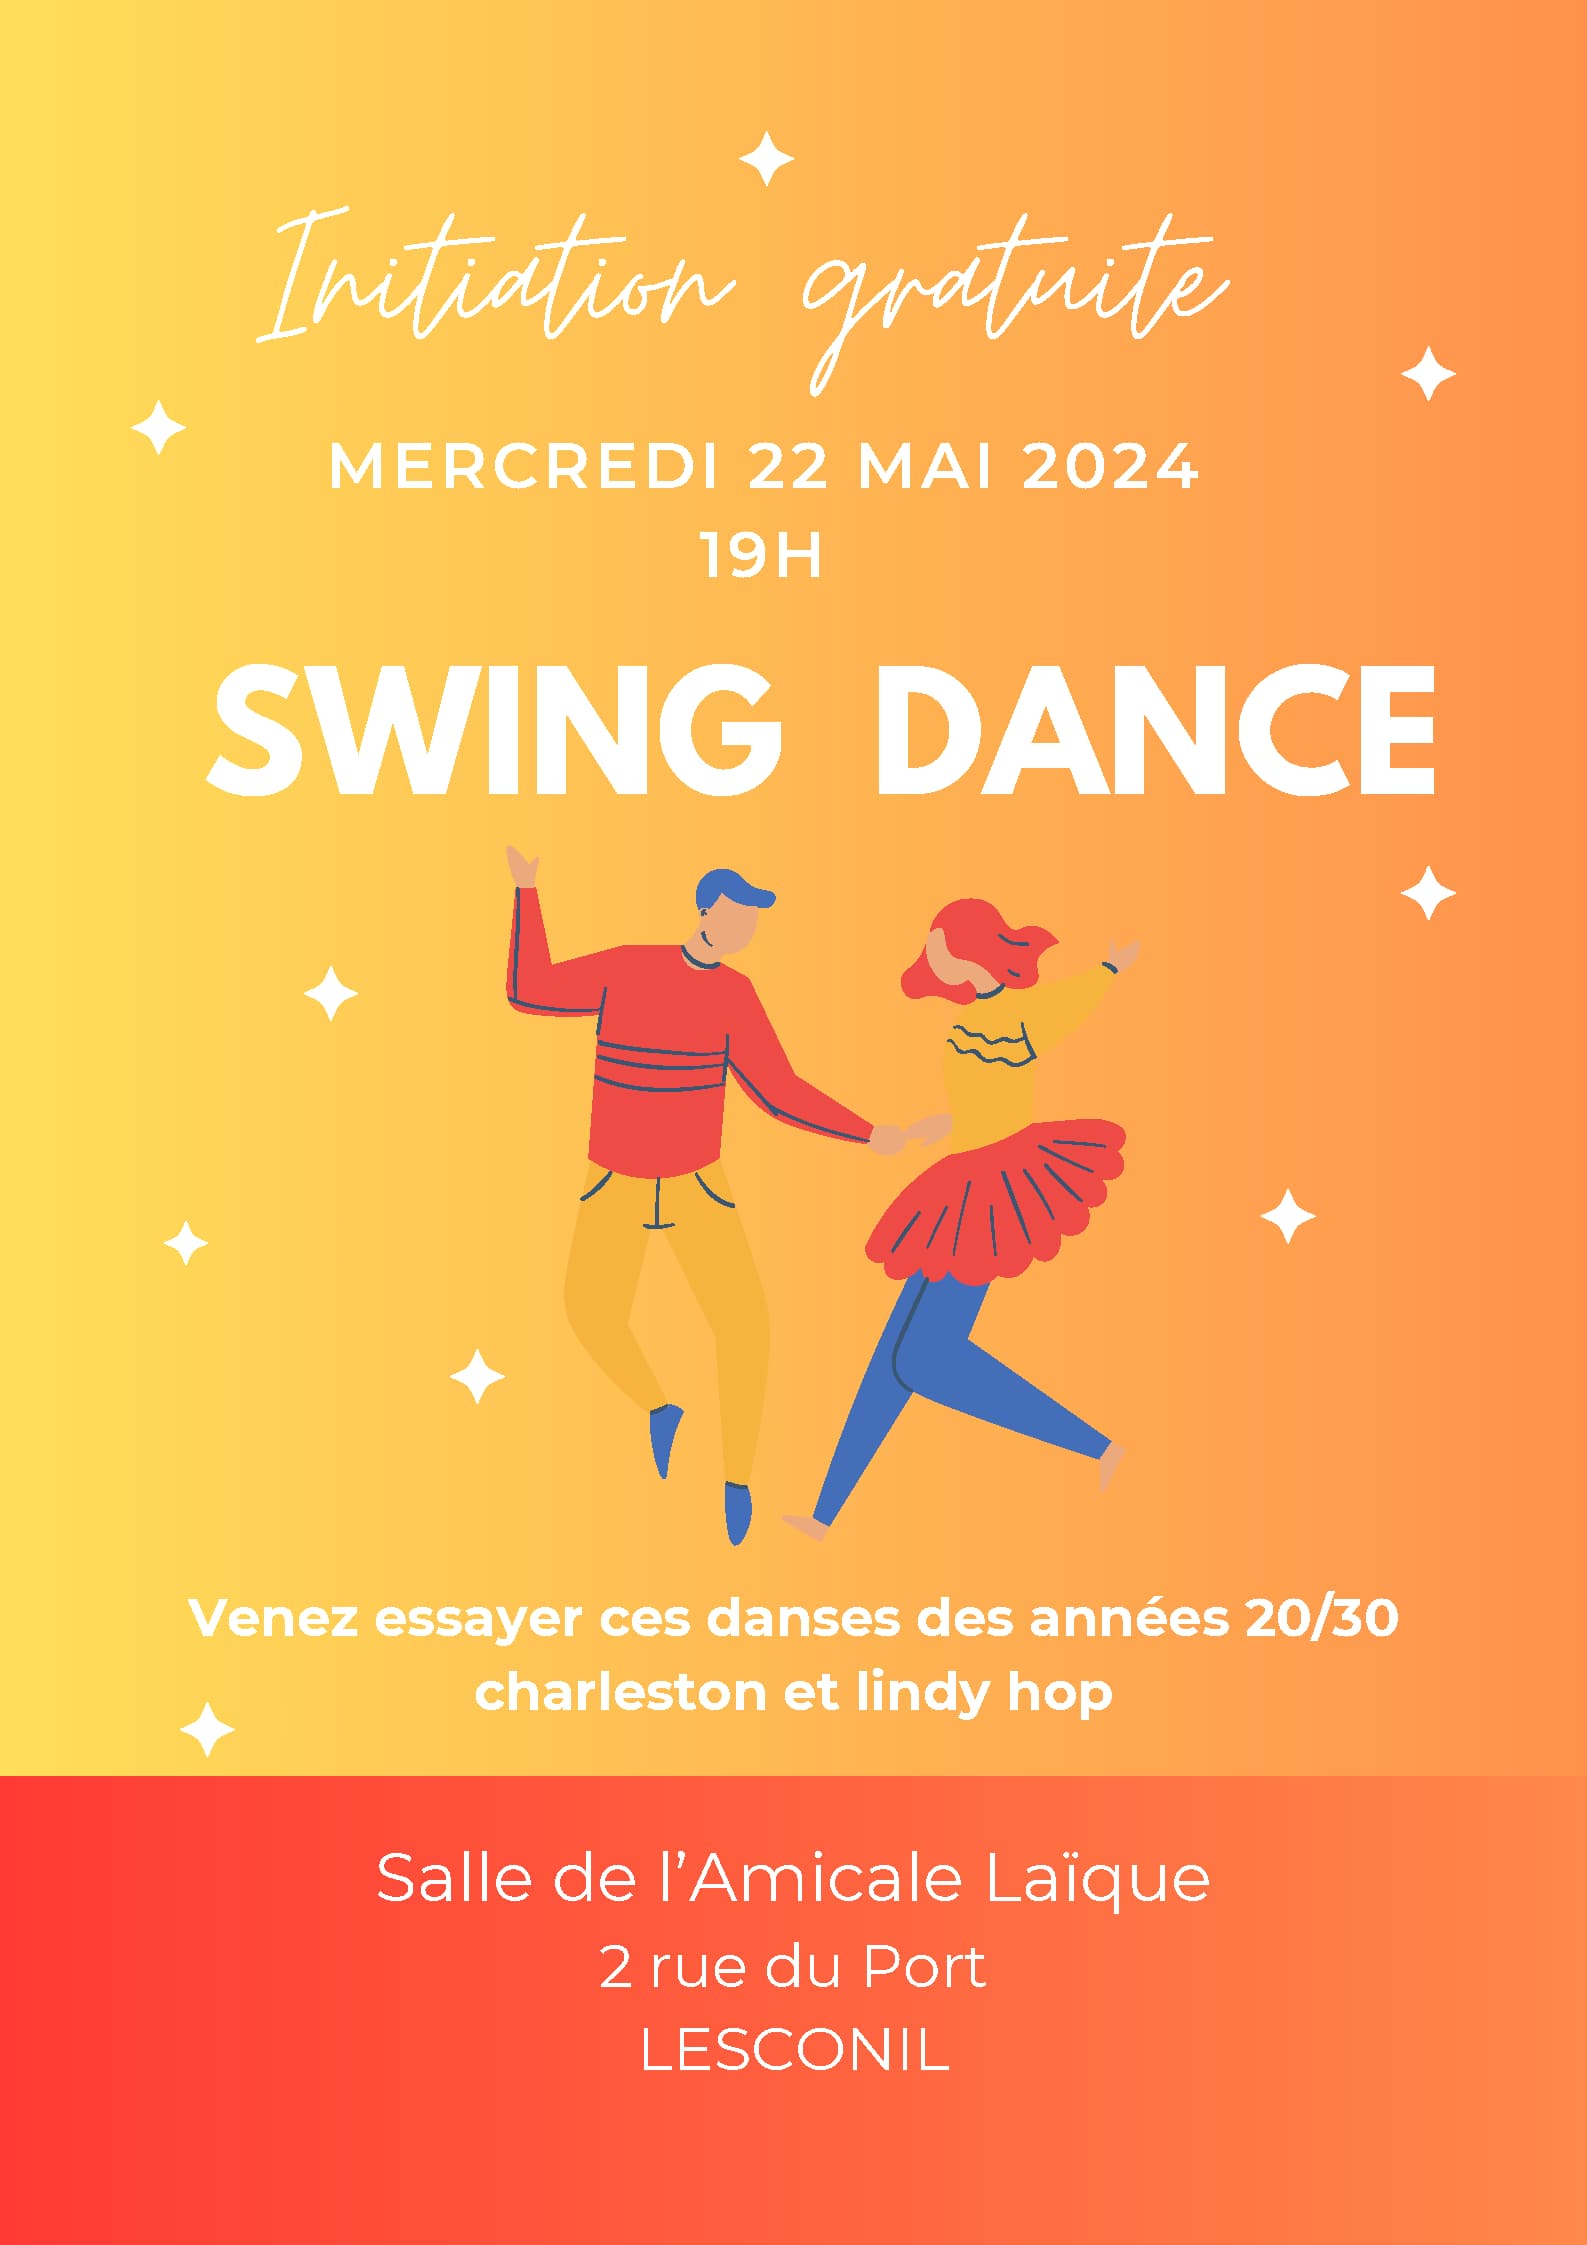 Initiation Danse Swing